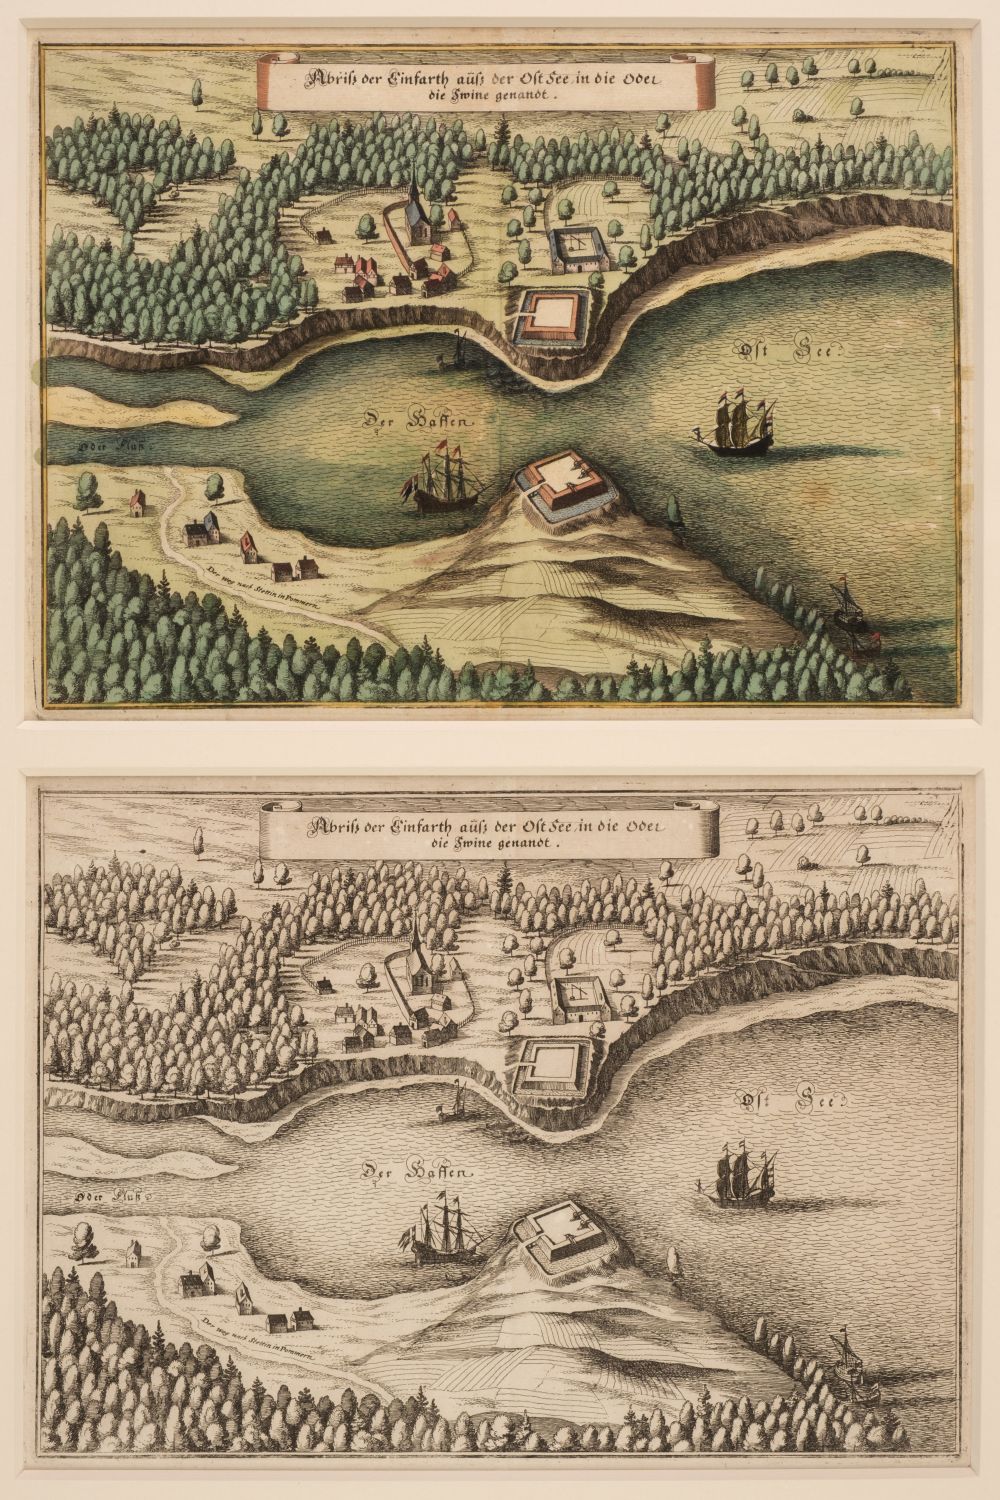 * Poland. Swinemunde (Swinoujscie), Merian (M.), Abriss der Einfarth..., circa 1652